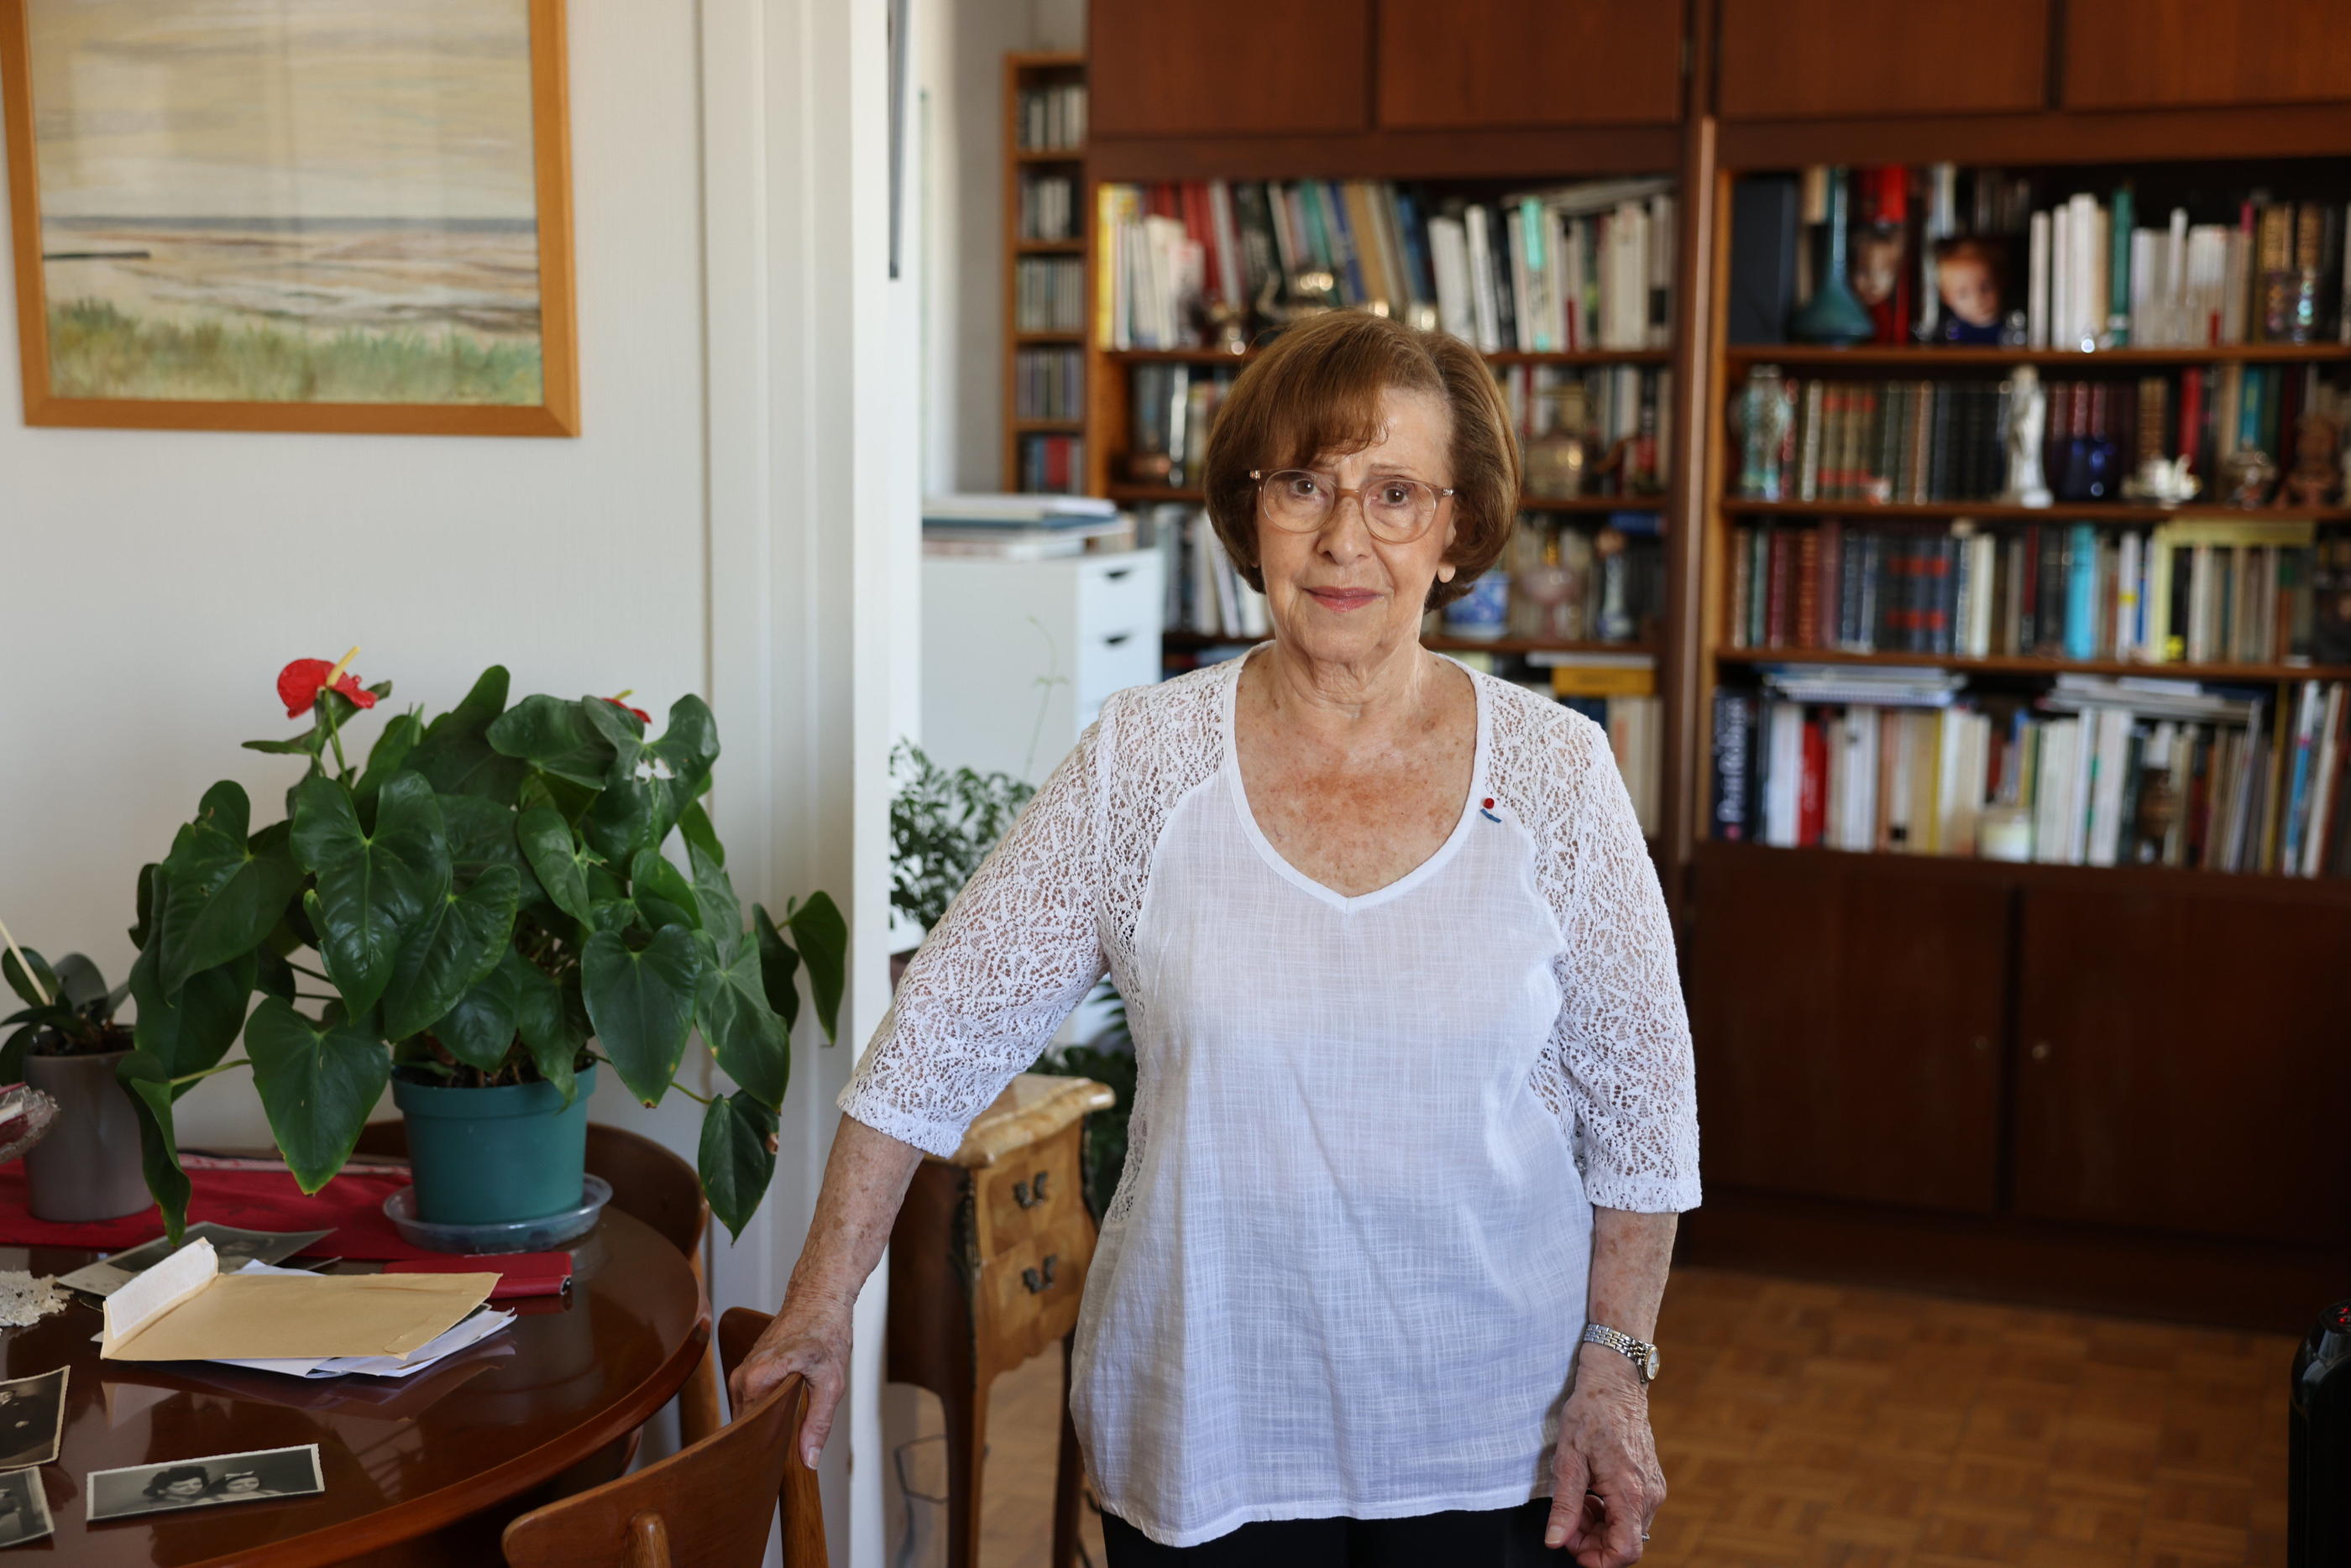 En témoignant depuis vingt-sept ans dans des écoles et lors de conférences, Rachel Jedinak, rescapée de la Shoah, espère «semer des graines» contre l’antisémitisme. LP/Olivier Lejeune